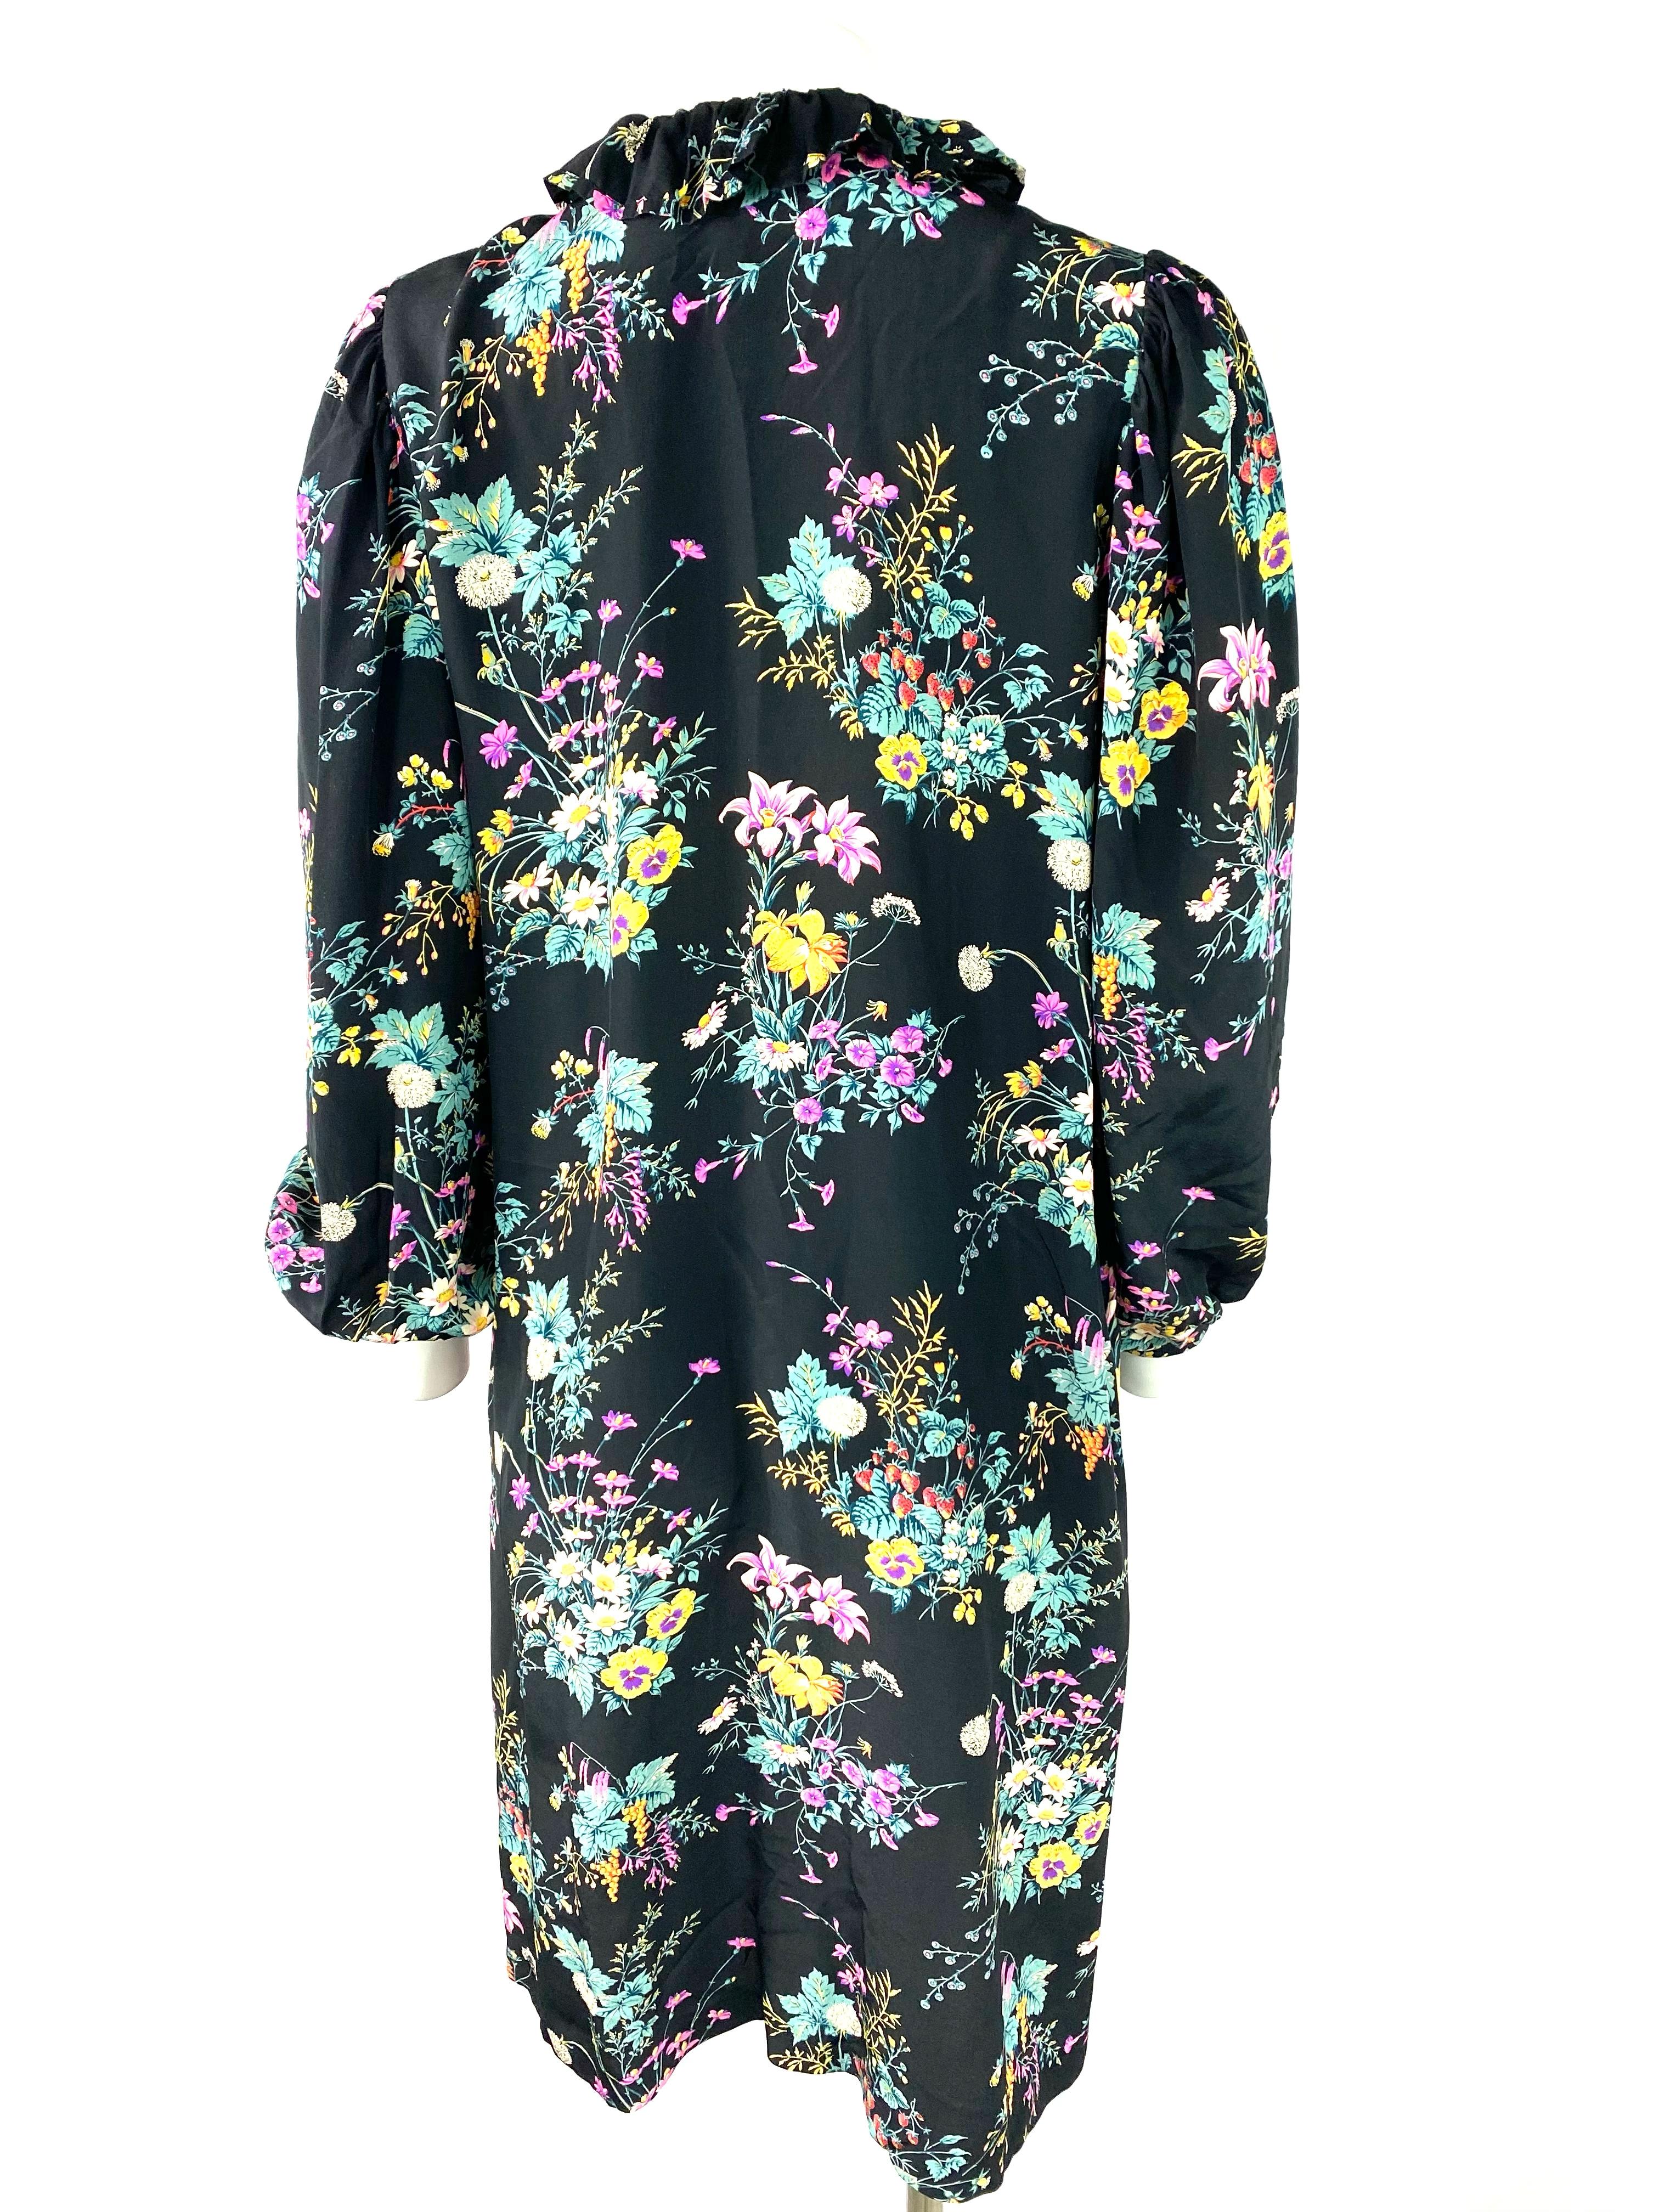 Hanae Mori Paris Black and Multi Colored Silk Mini Dress, Size Small ...